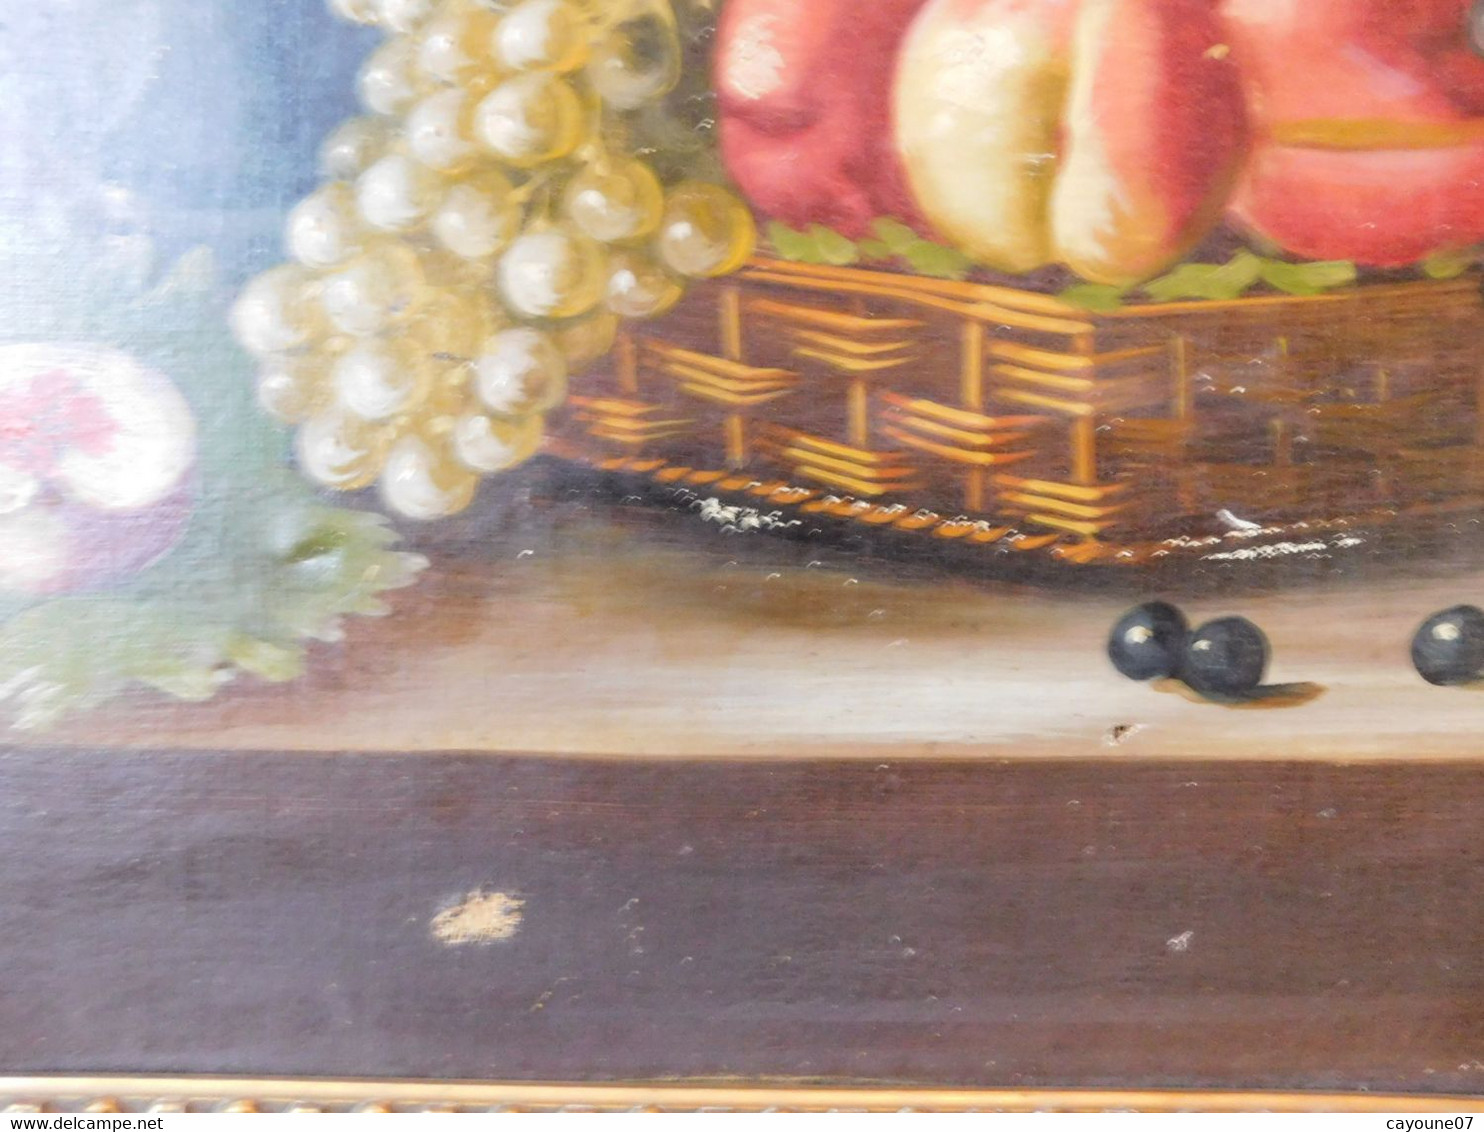 MORTELAZ (XIX-XXème) huile sur toile grand format nature morte aux raisins pêches et bouquet fleuri